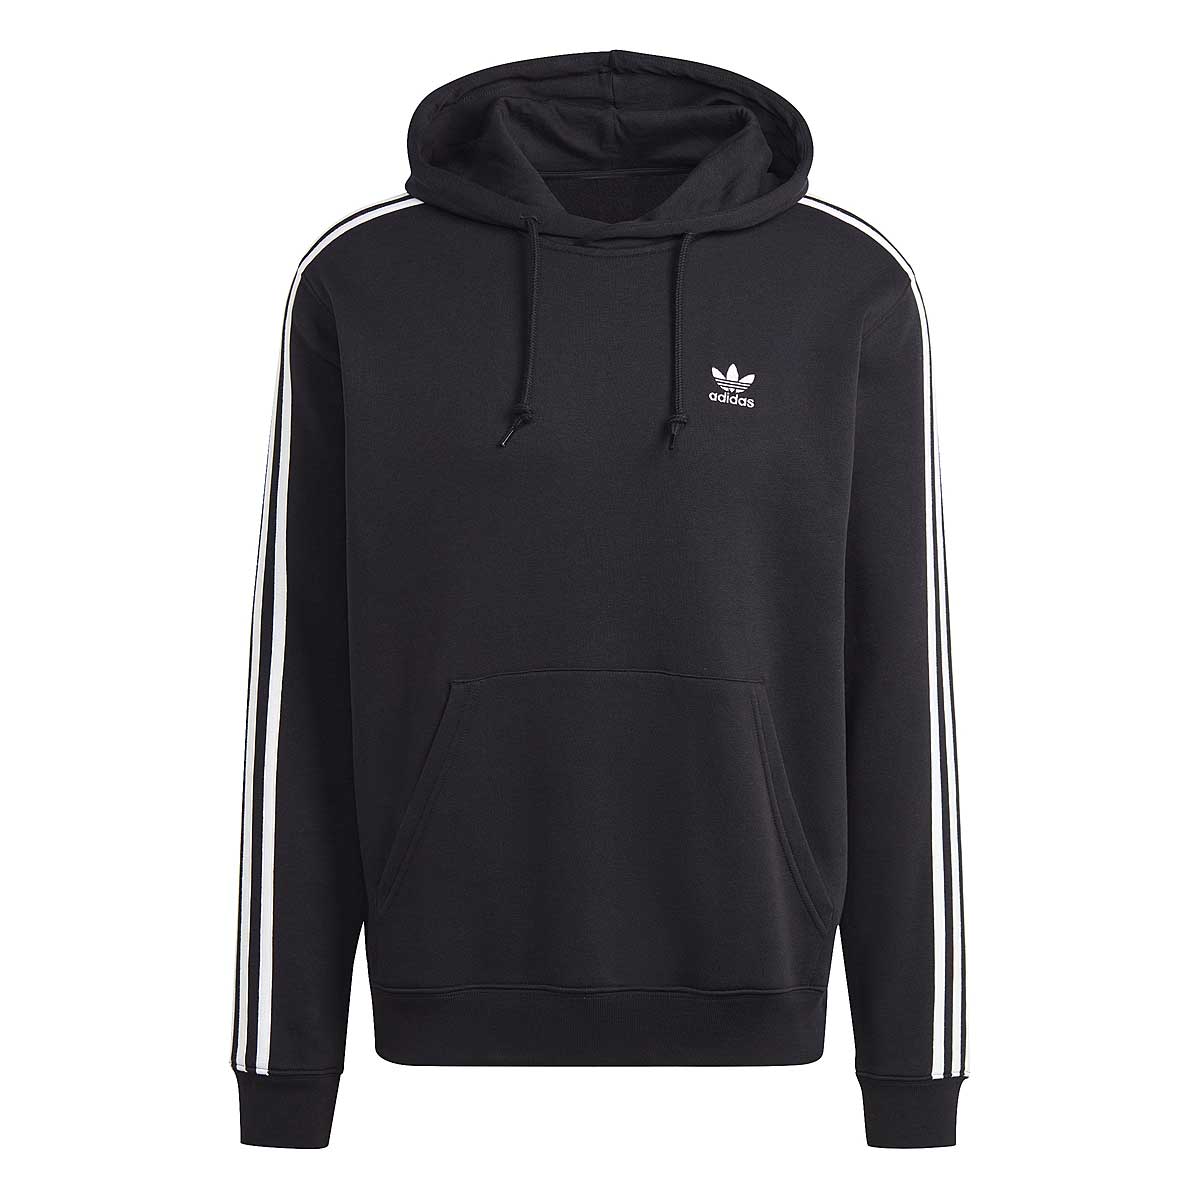 Adidas 3-stripes Hoody, Schwarz/schwarz XL